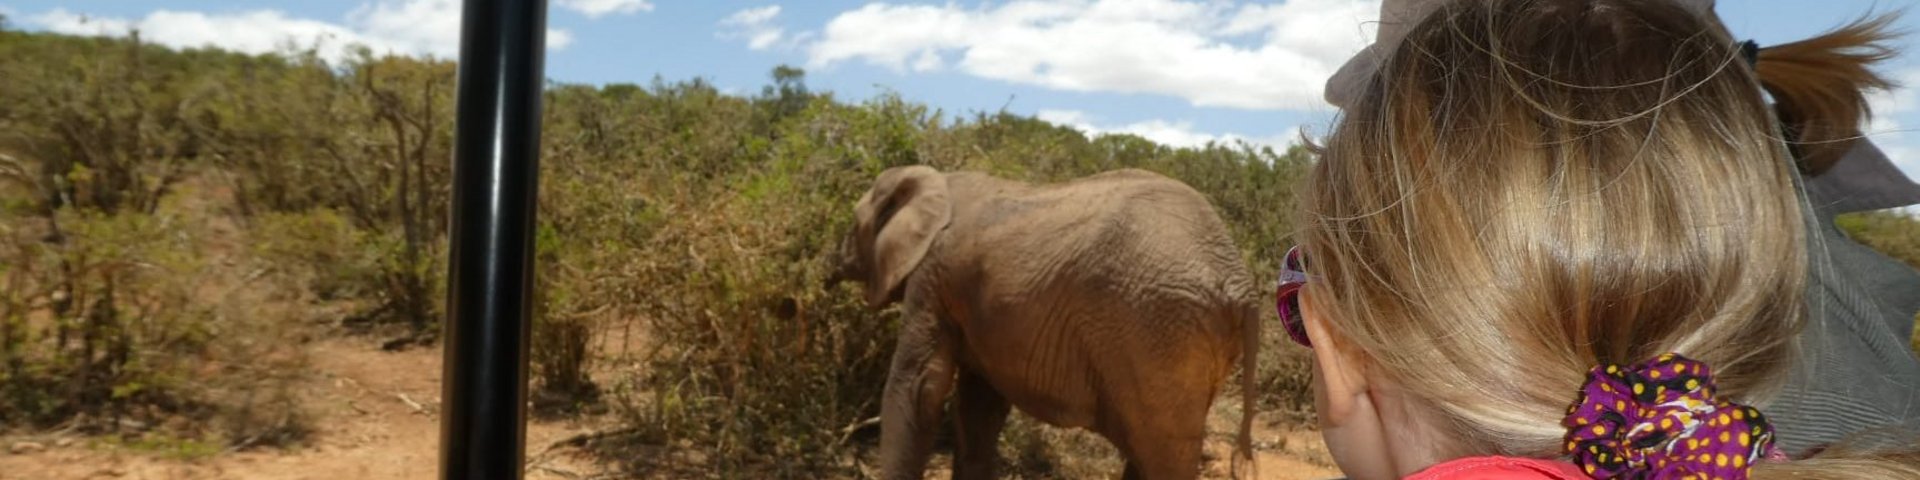 Pirschfahrt Addo Elephant NP 